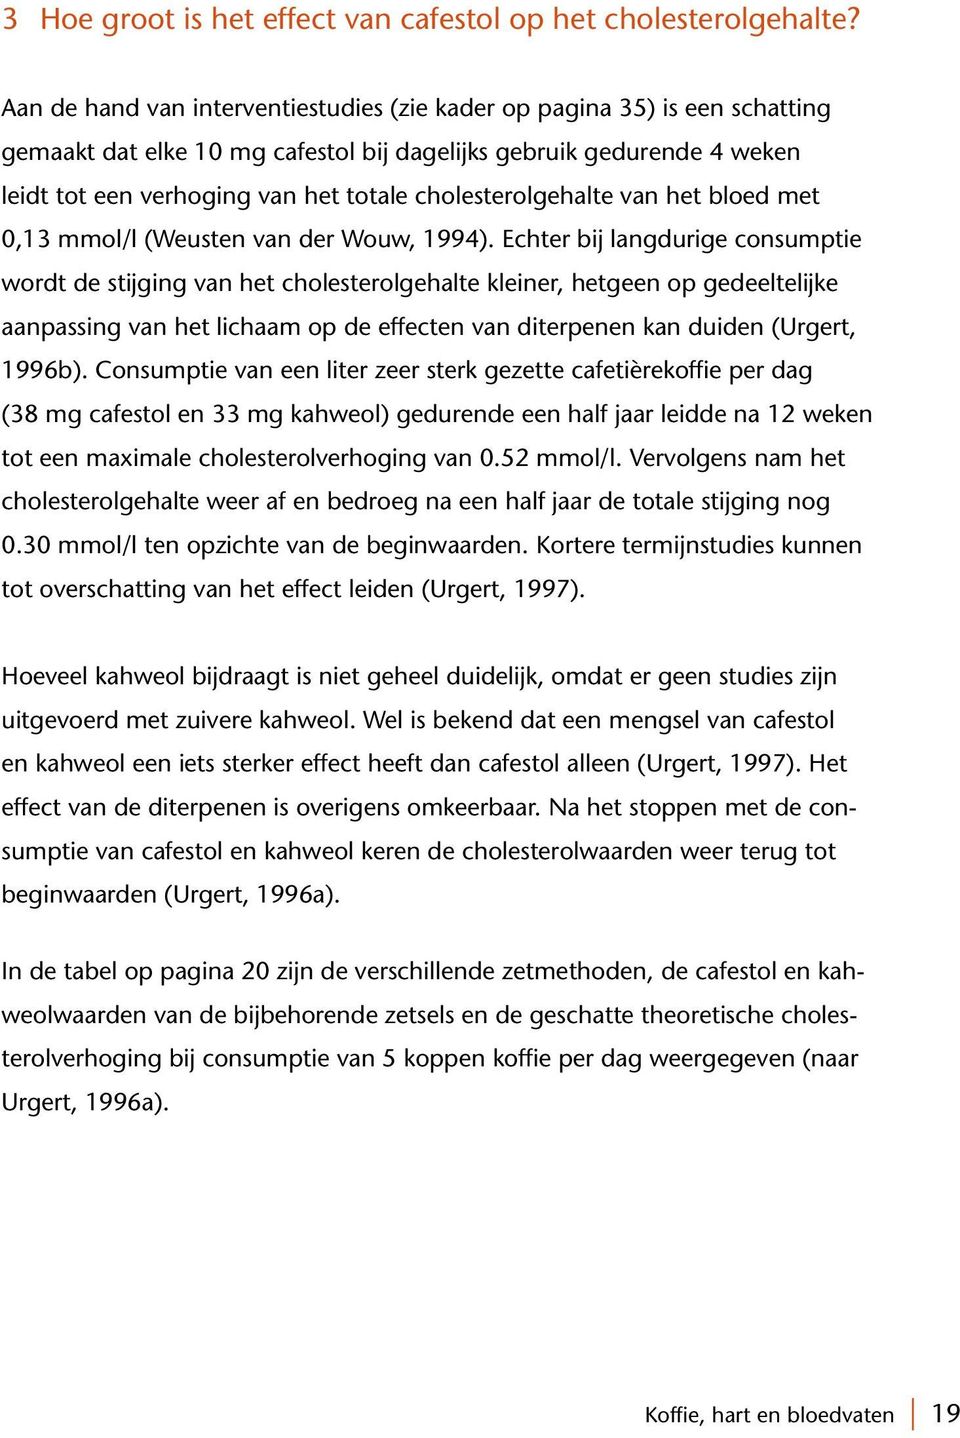 cholesterolgehalte van het bloed met 0,13 mmol/l (Weusten van der Wouw, 1994).